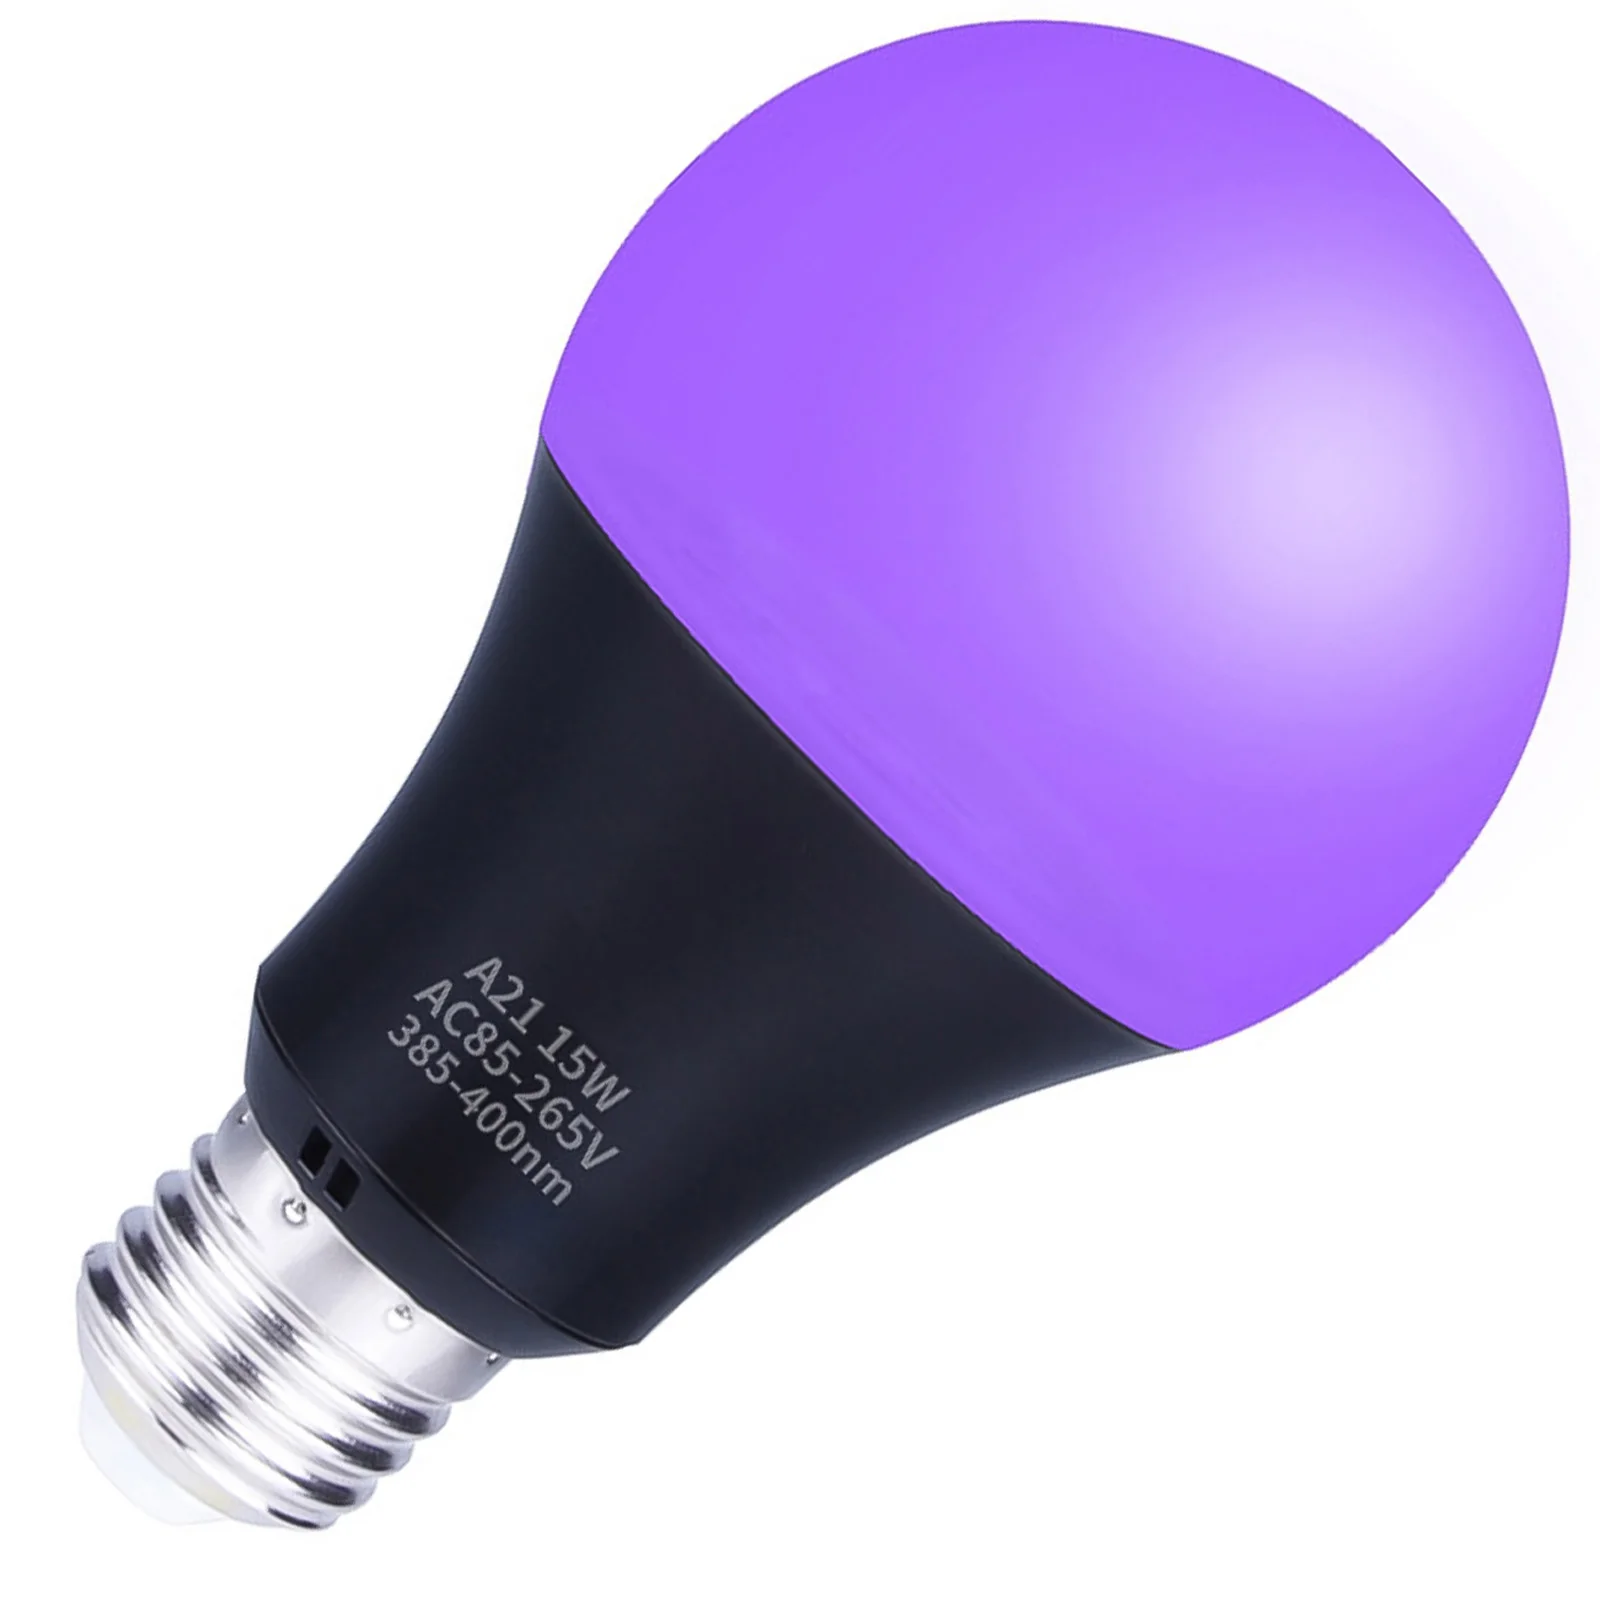 Ультрафиолетовая лампа с высоким коэффициентом пропускания света